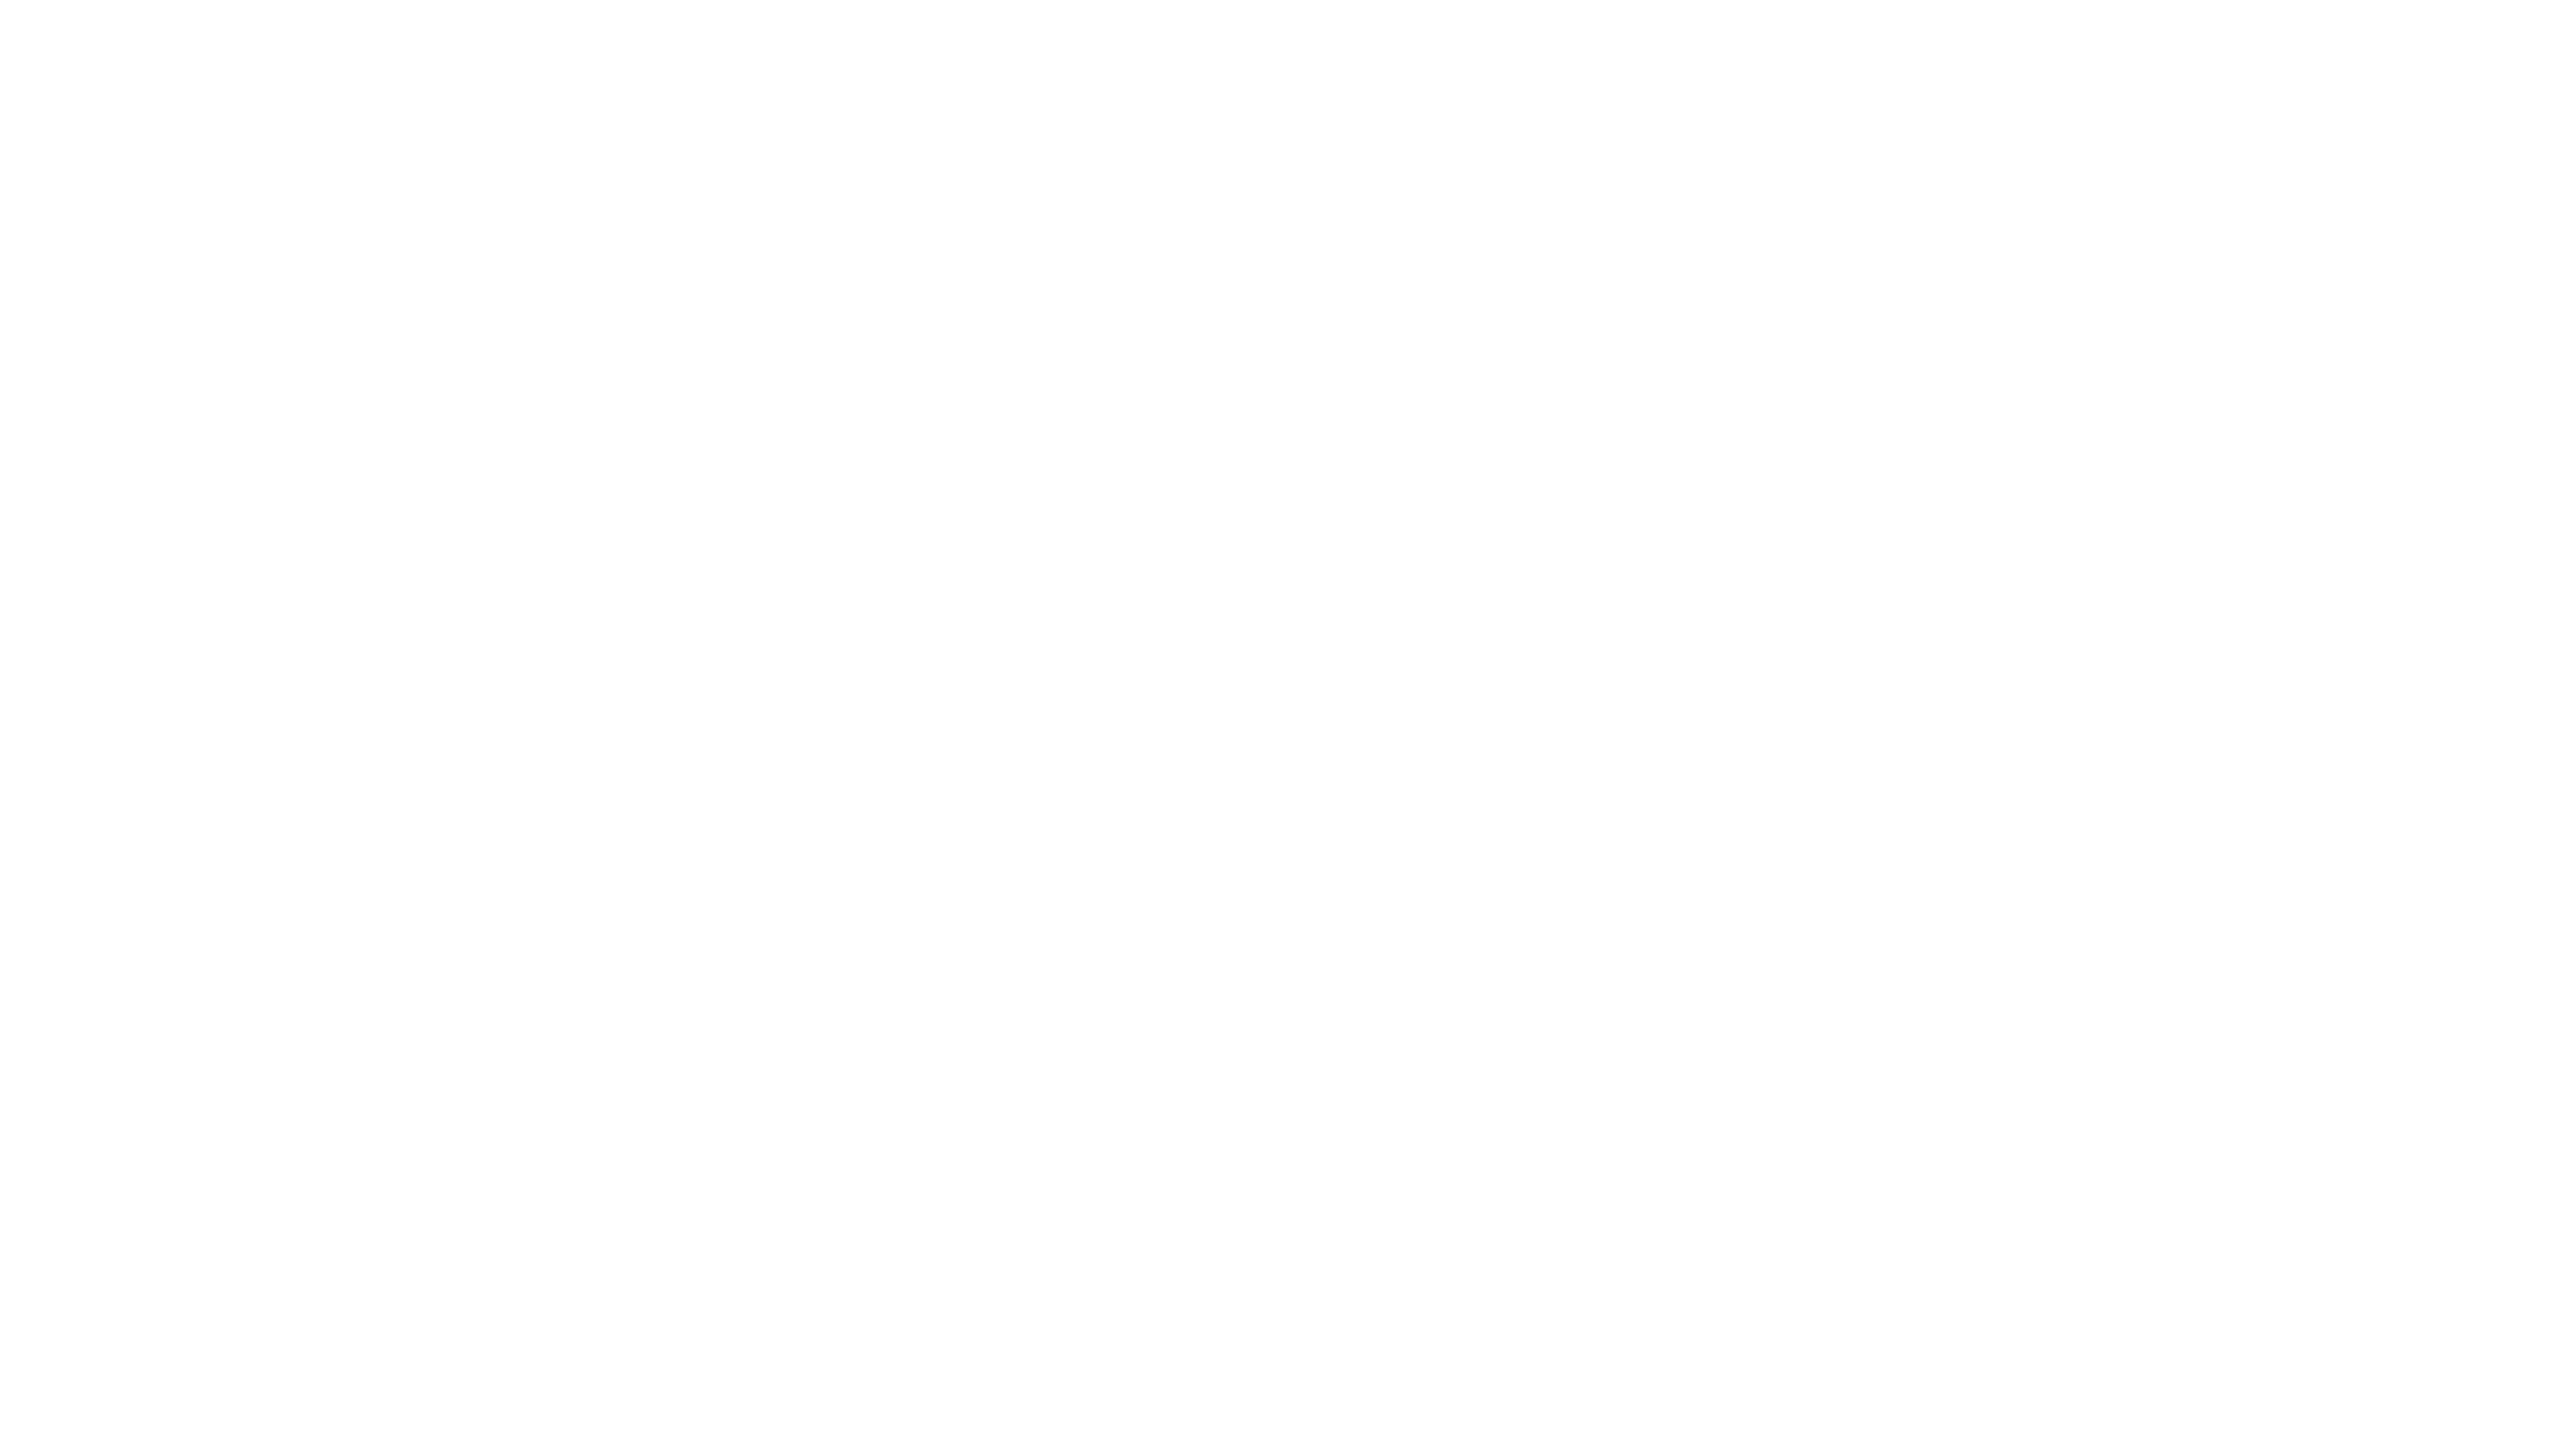 Arslan Awan